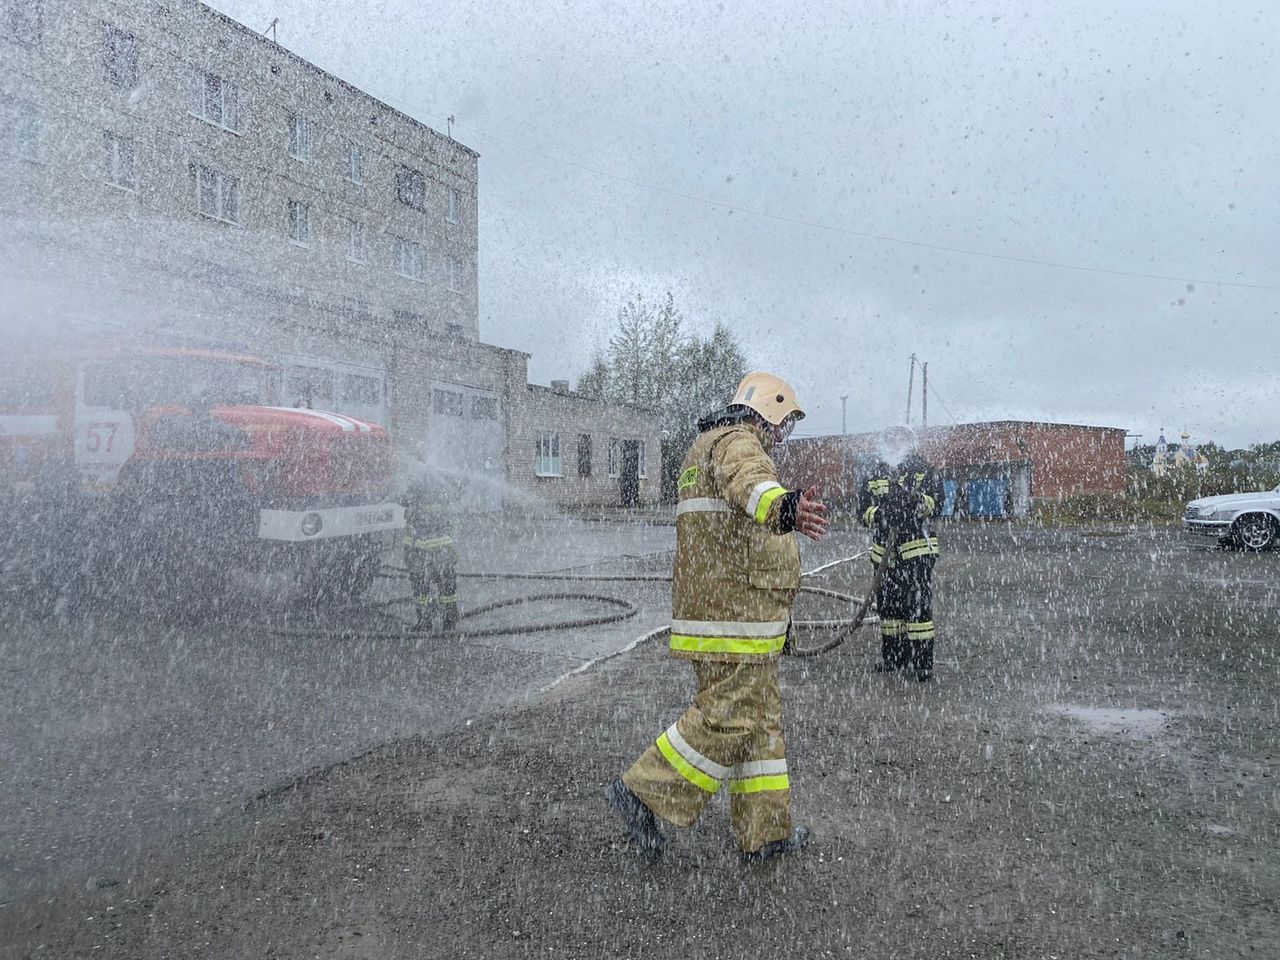 Заместитель начальника пожарно-спасательного отряда ушел на пенсию. Его облили водой из 4 рукавов